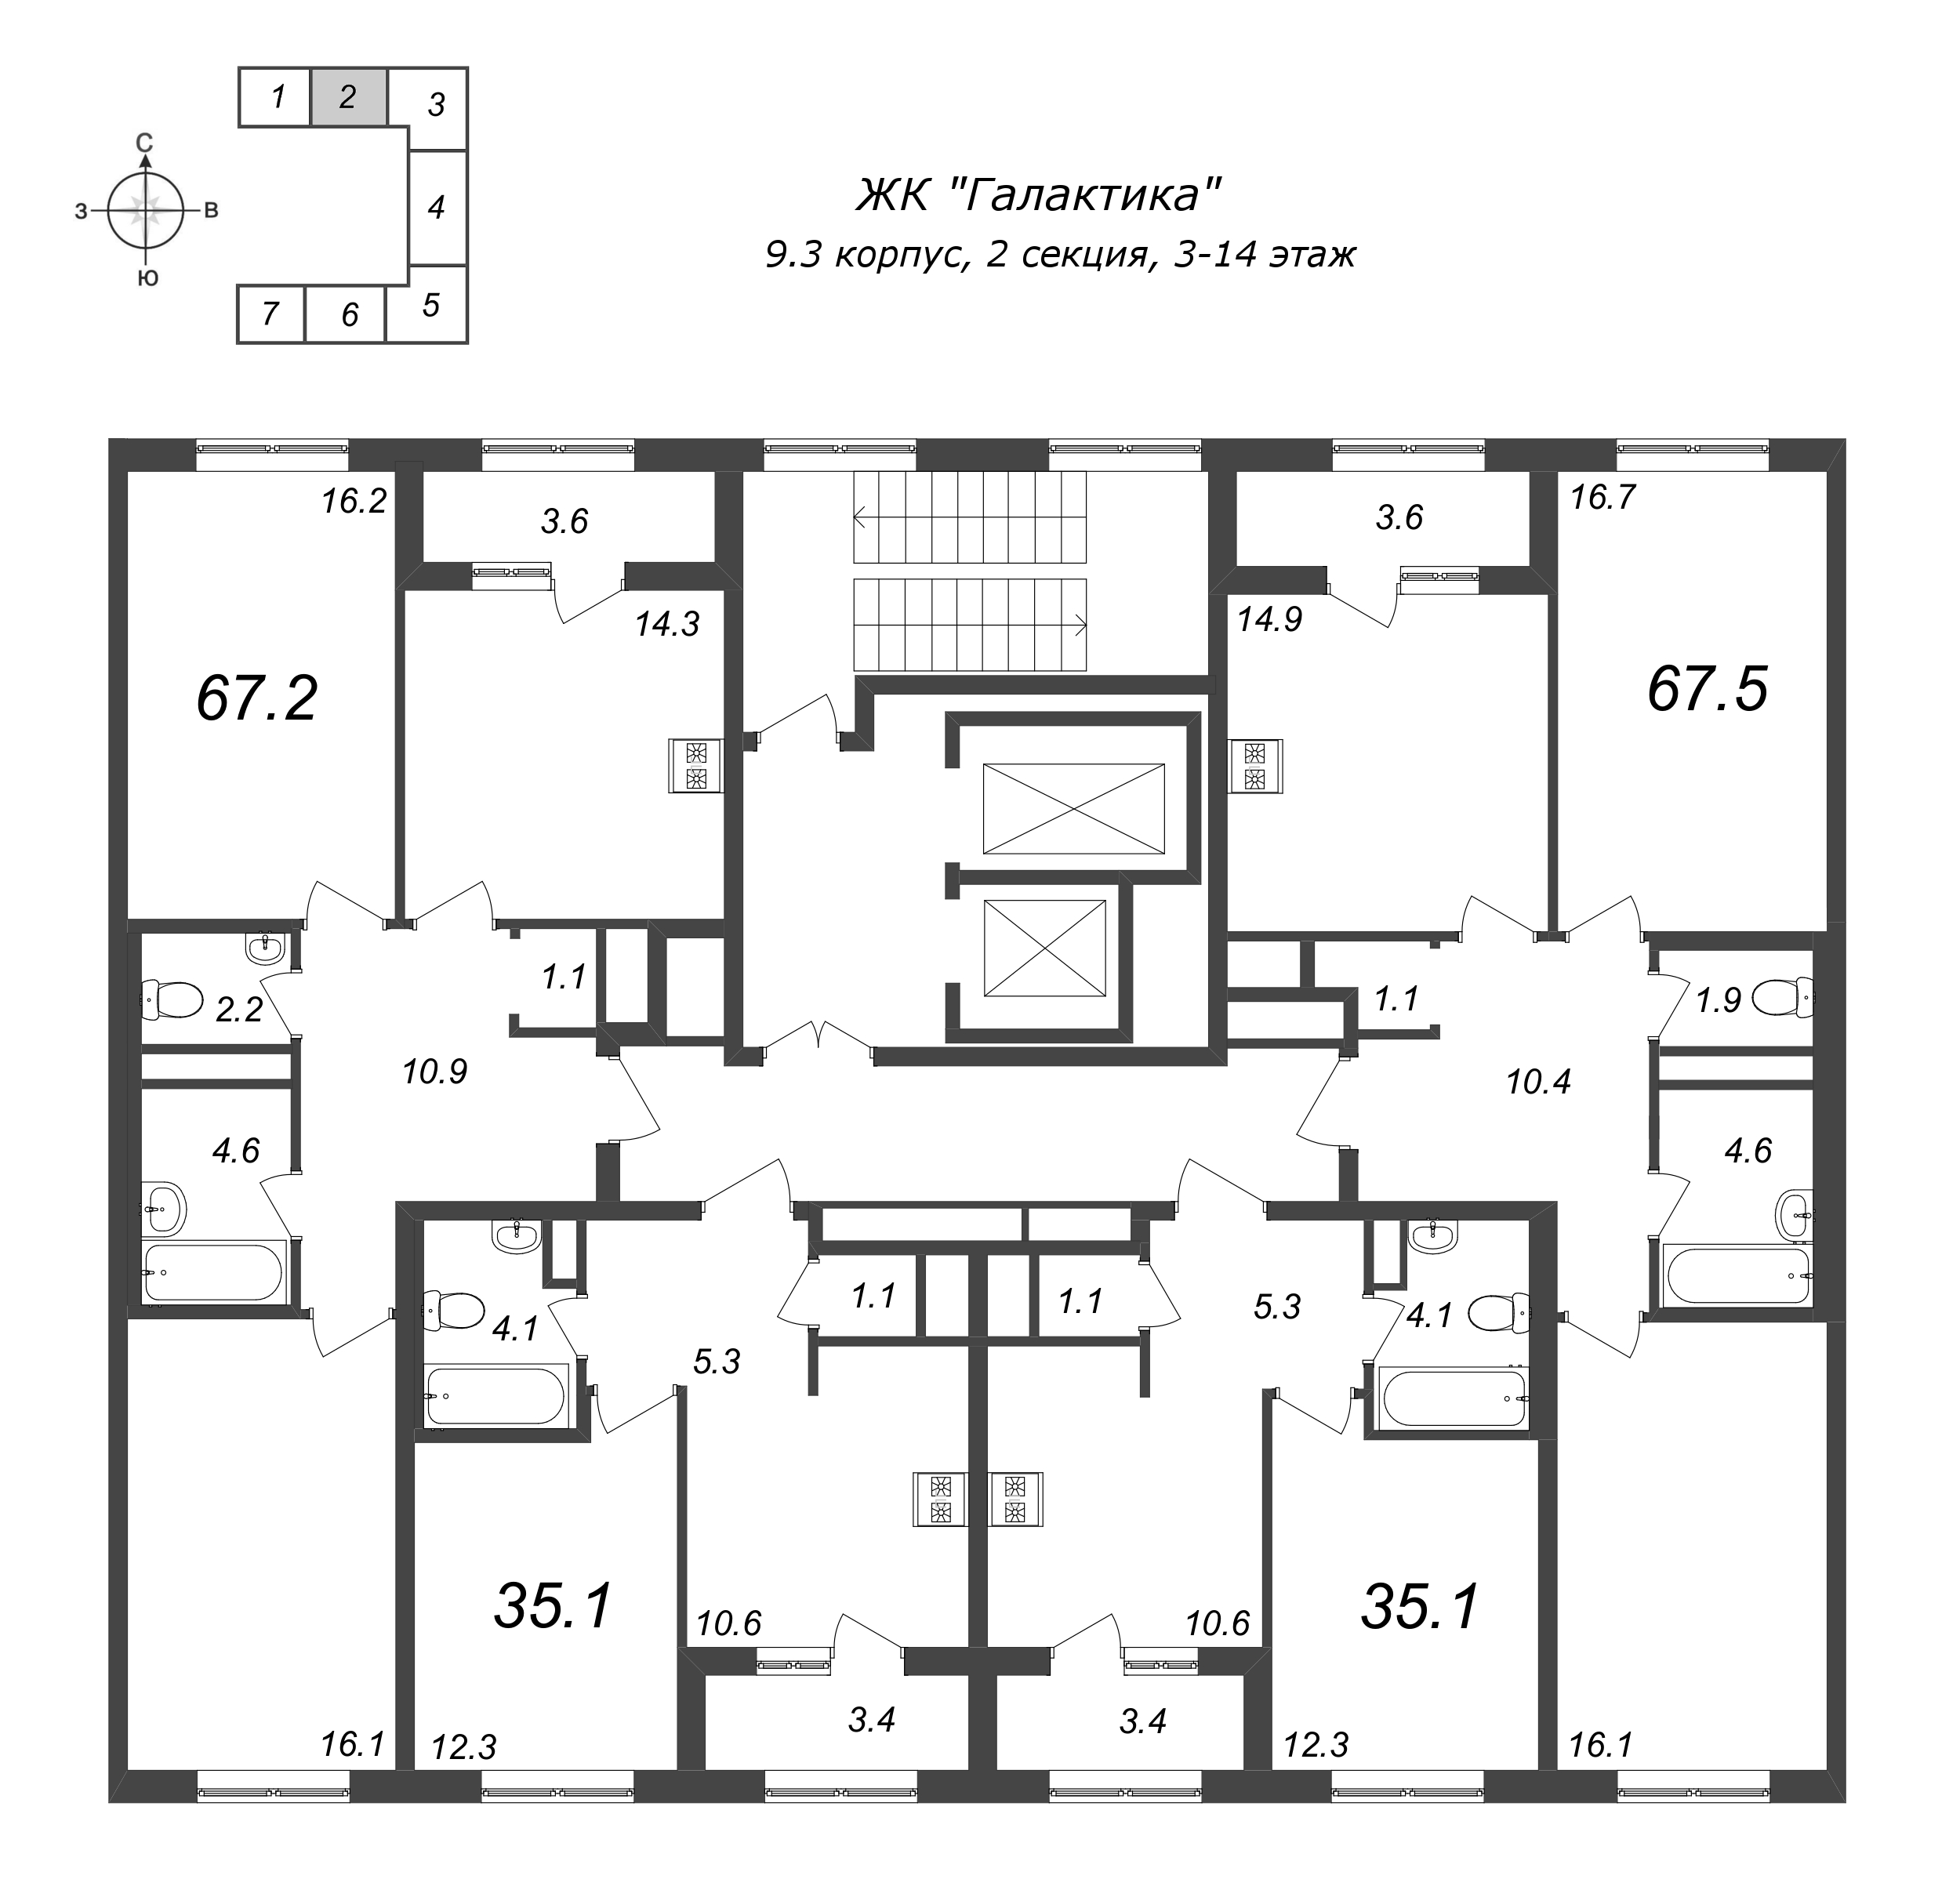 1-комнатная квартира, 35.2 м² в ЖК "Галактика" - планировка этажа